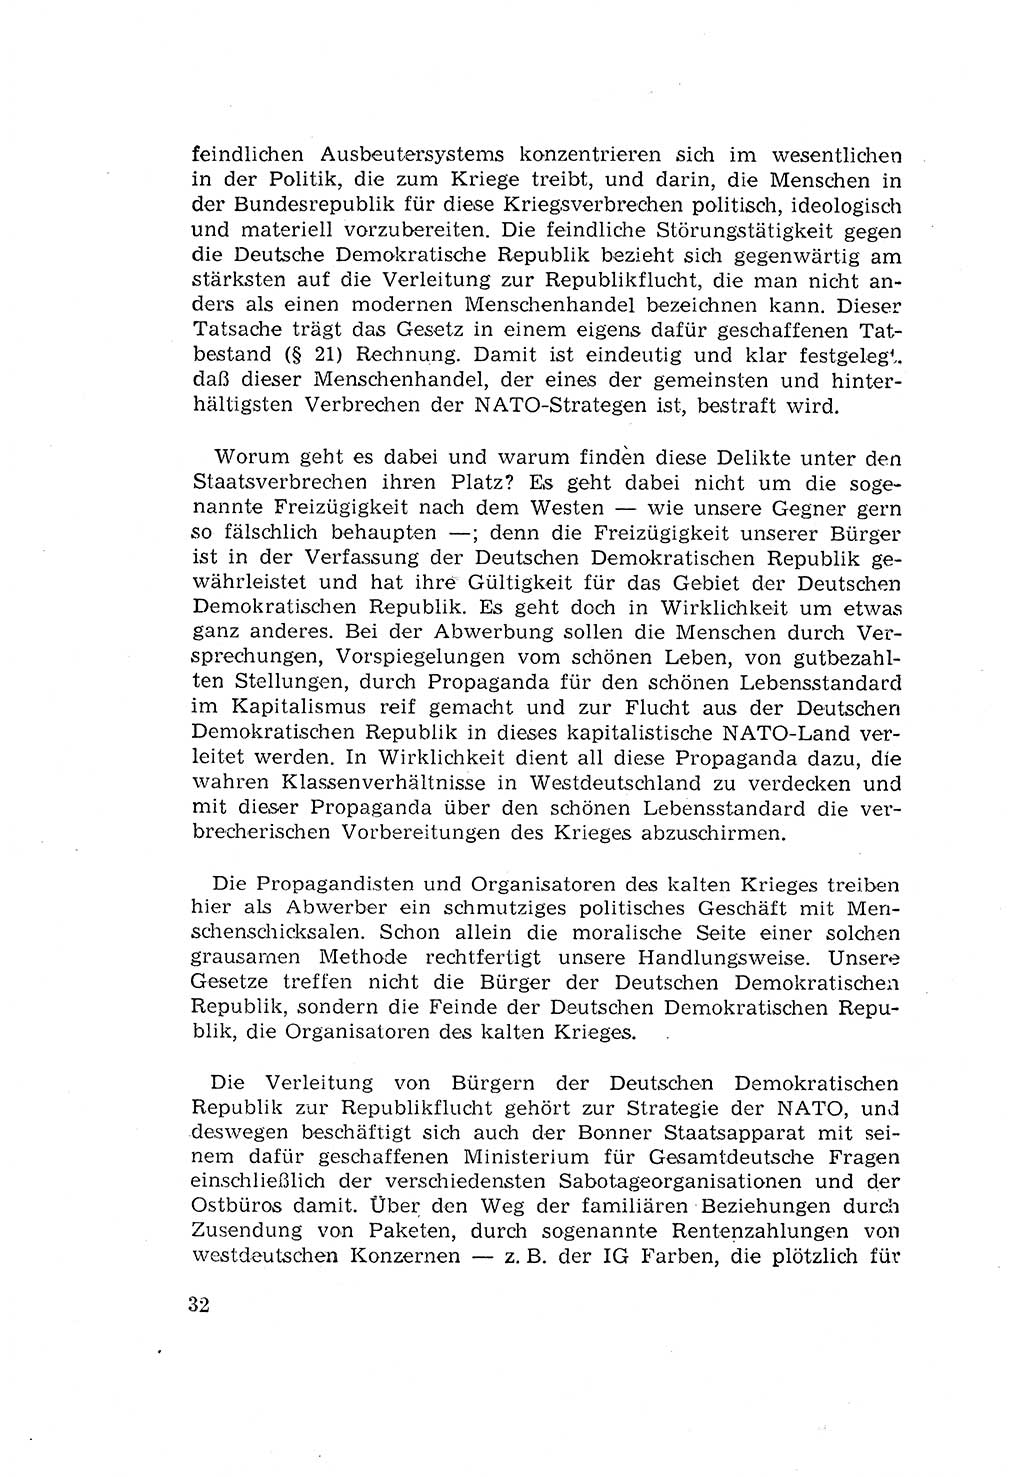 Zum Erlaß des Gesetzes zur Ergänzung des Strafgesetzbuches (StGB), Strafergänzungsgesetz (StEG) [Deutsche Demokratische Republik (DDR)] 1957, Seite 32 (StGB StEG DDR 1957, S. 32)